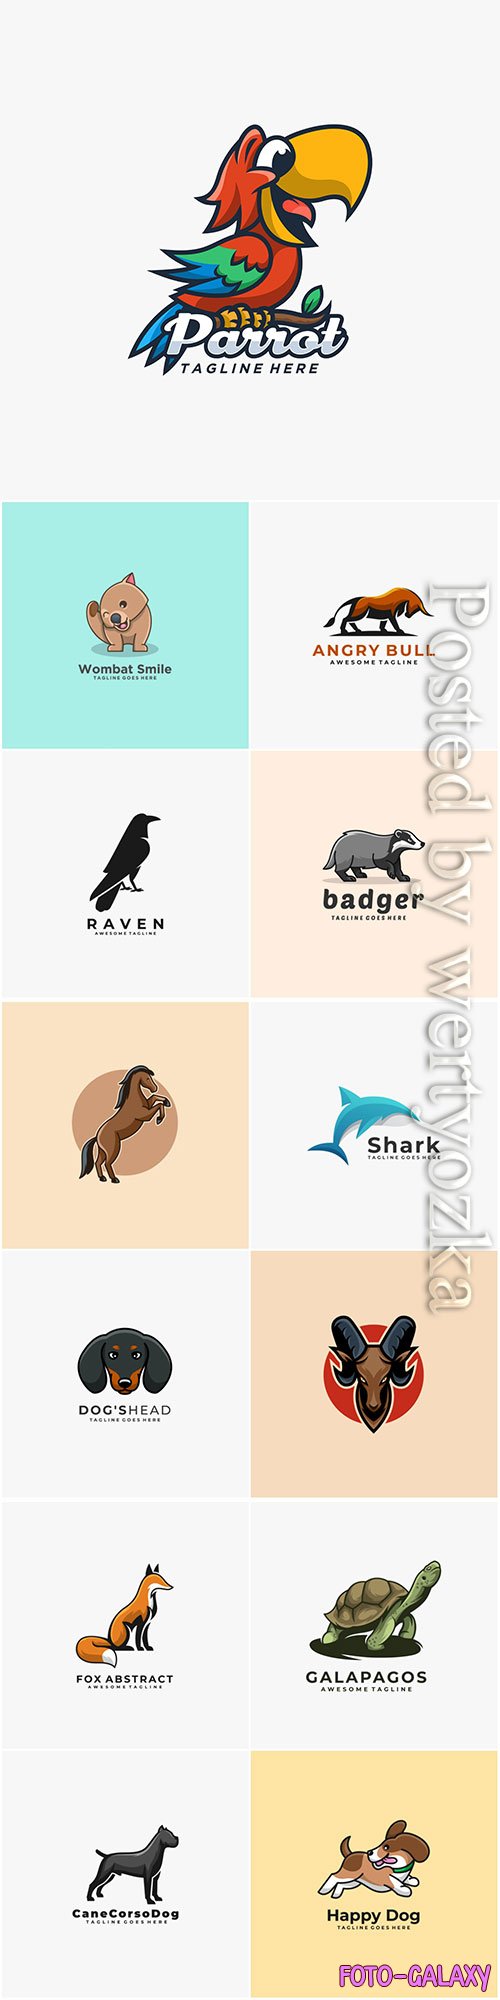 Animals and birds logos in vector vol 4